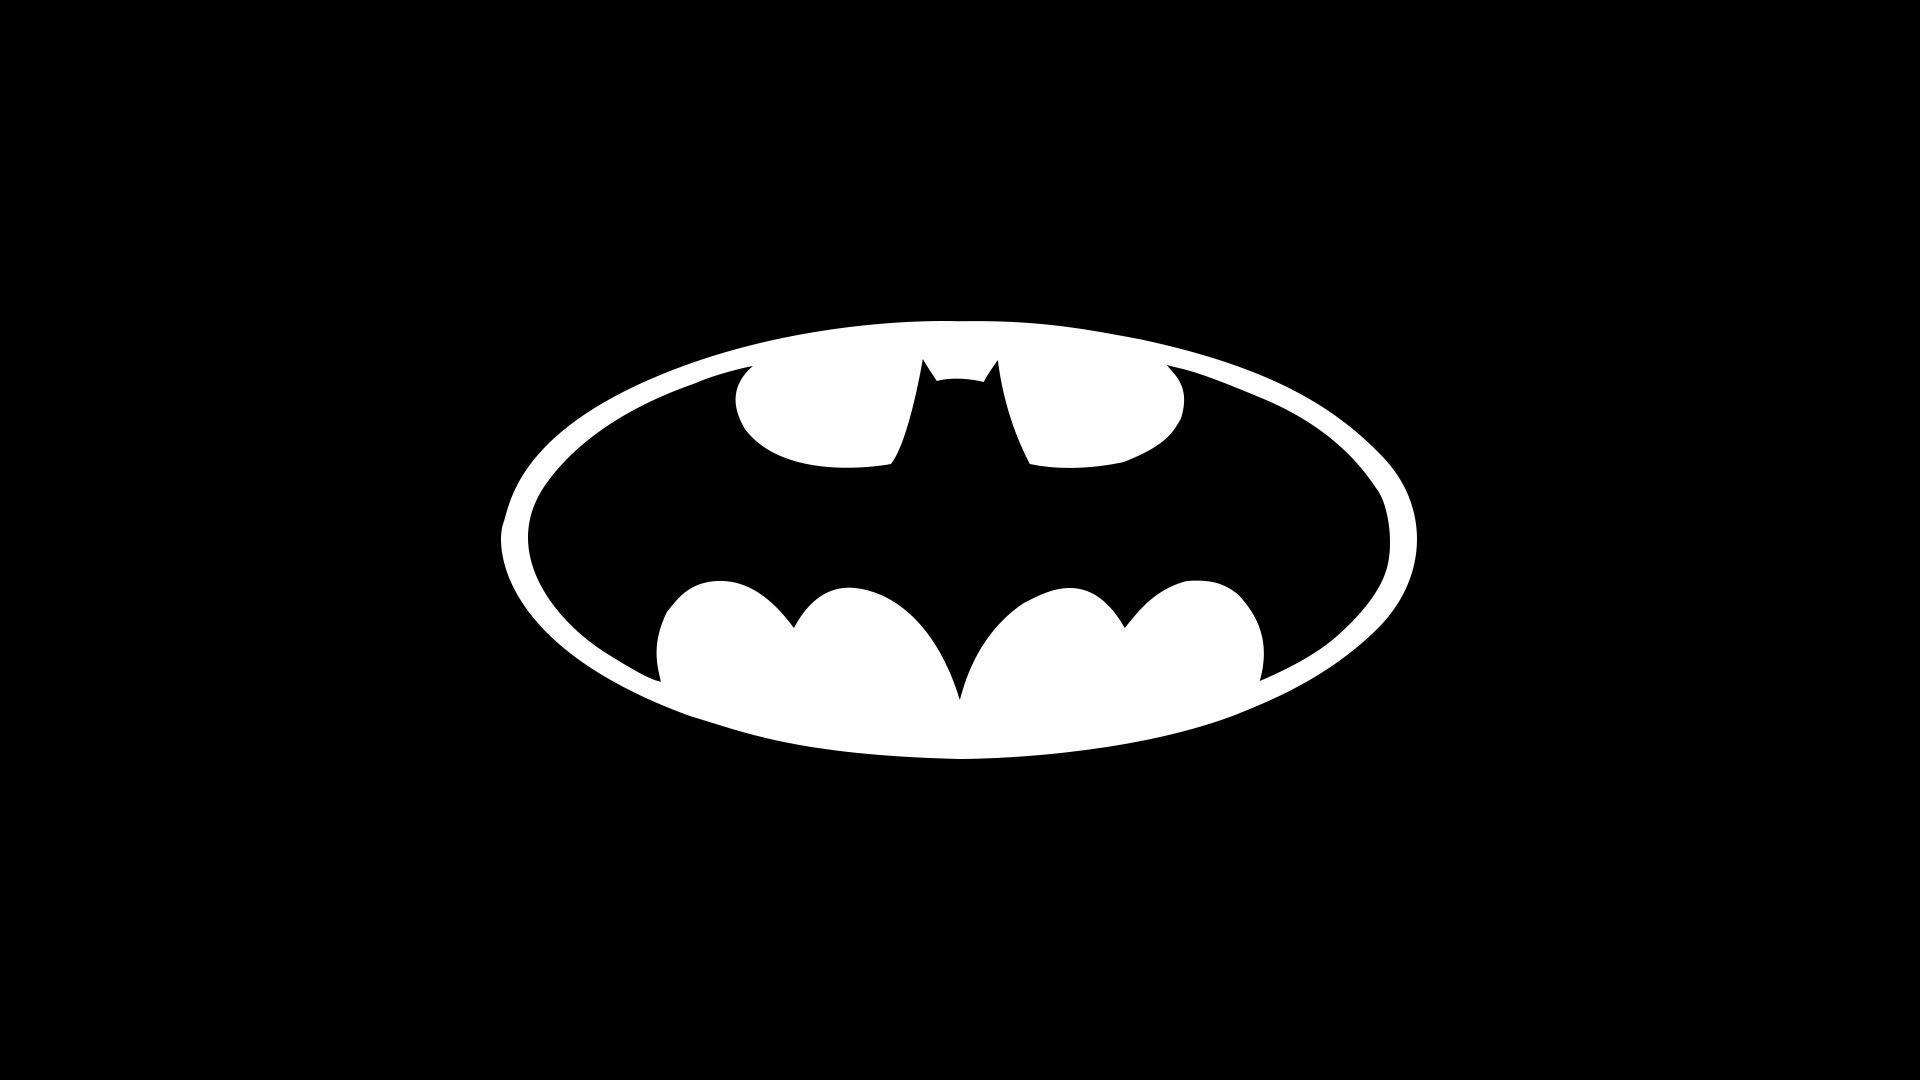 White Batman Logo - Simple Black And White Batman Logo Wallpaper